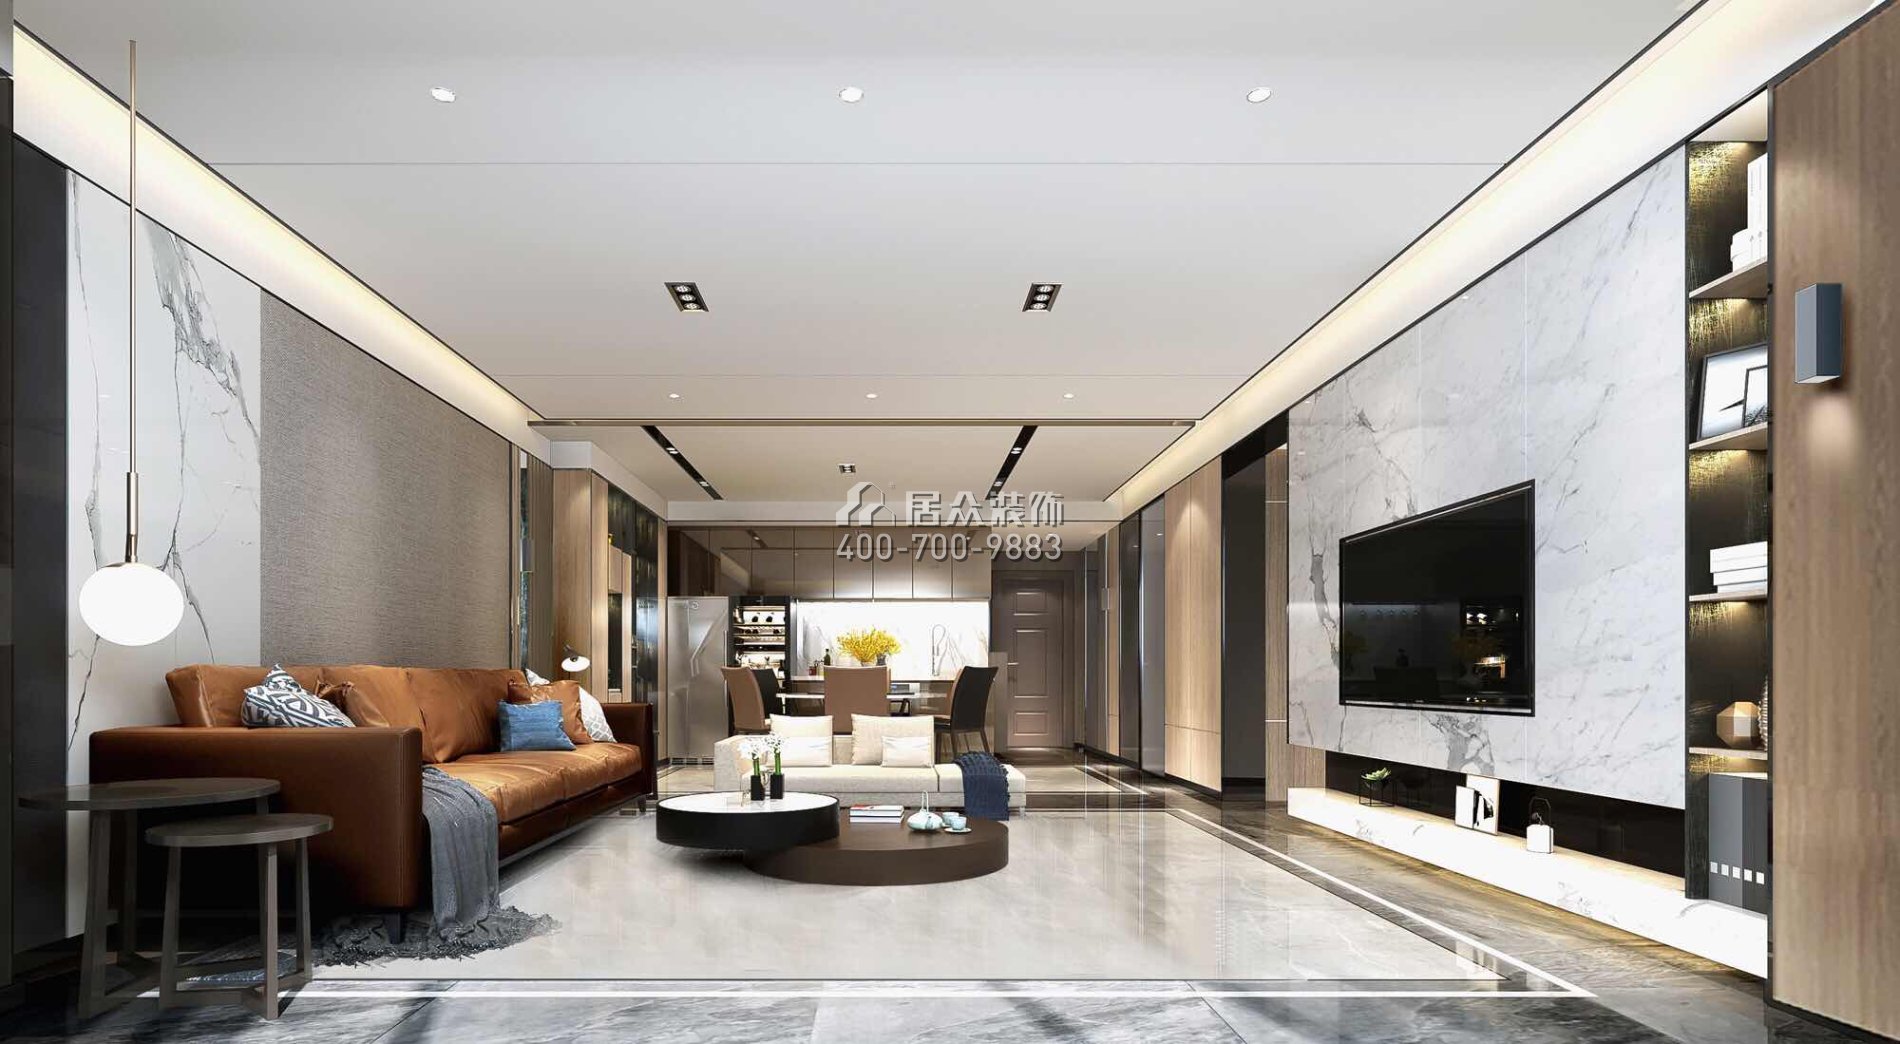 黃埔雅苑三期126平方米現代簡約風格平層戶型客廳裝修效果圖